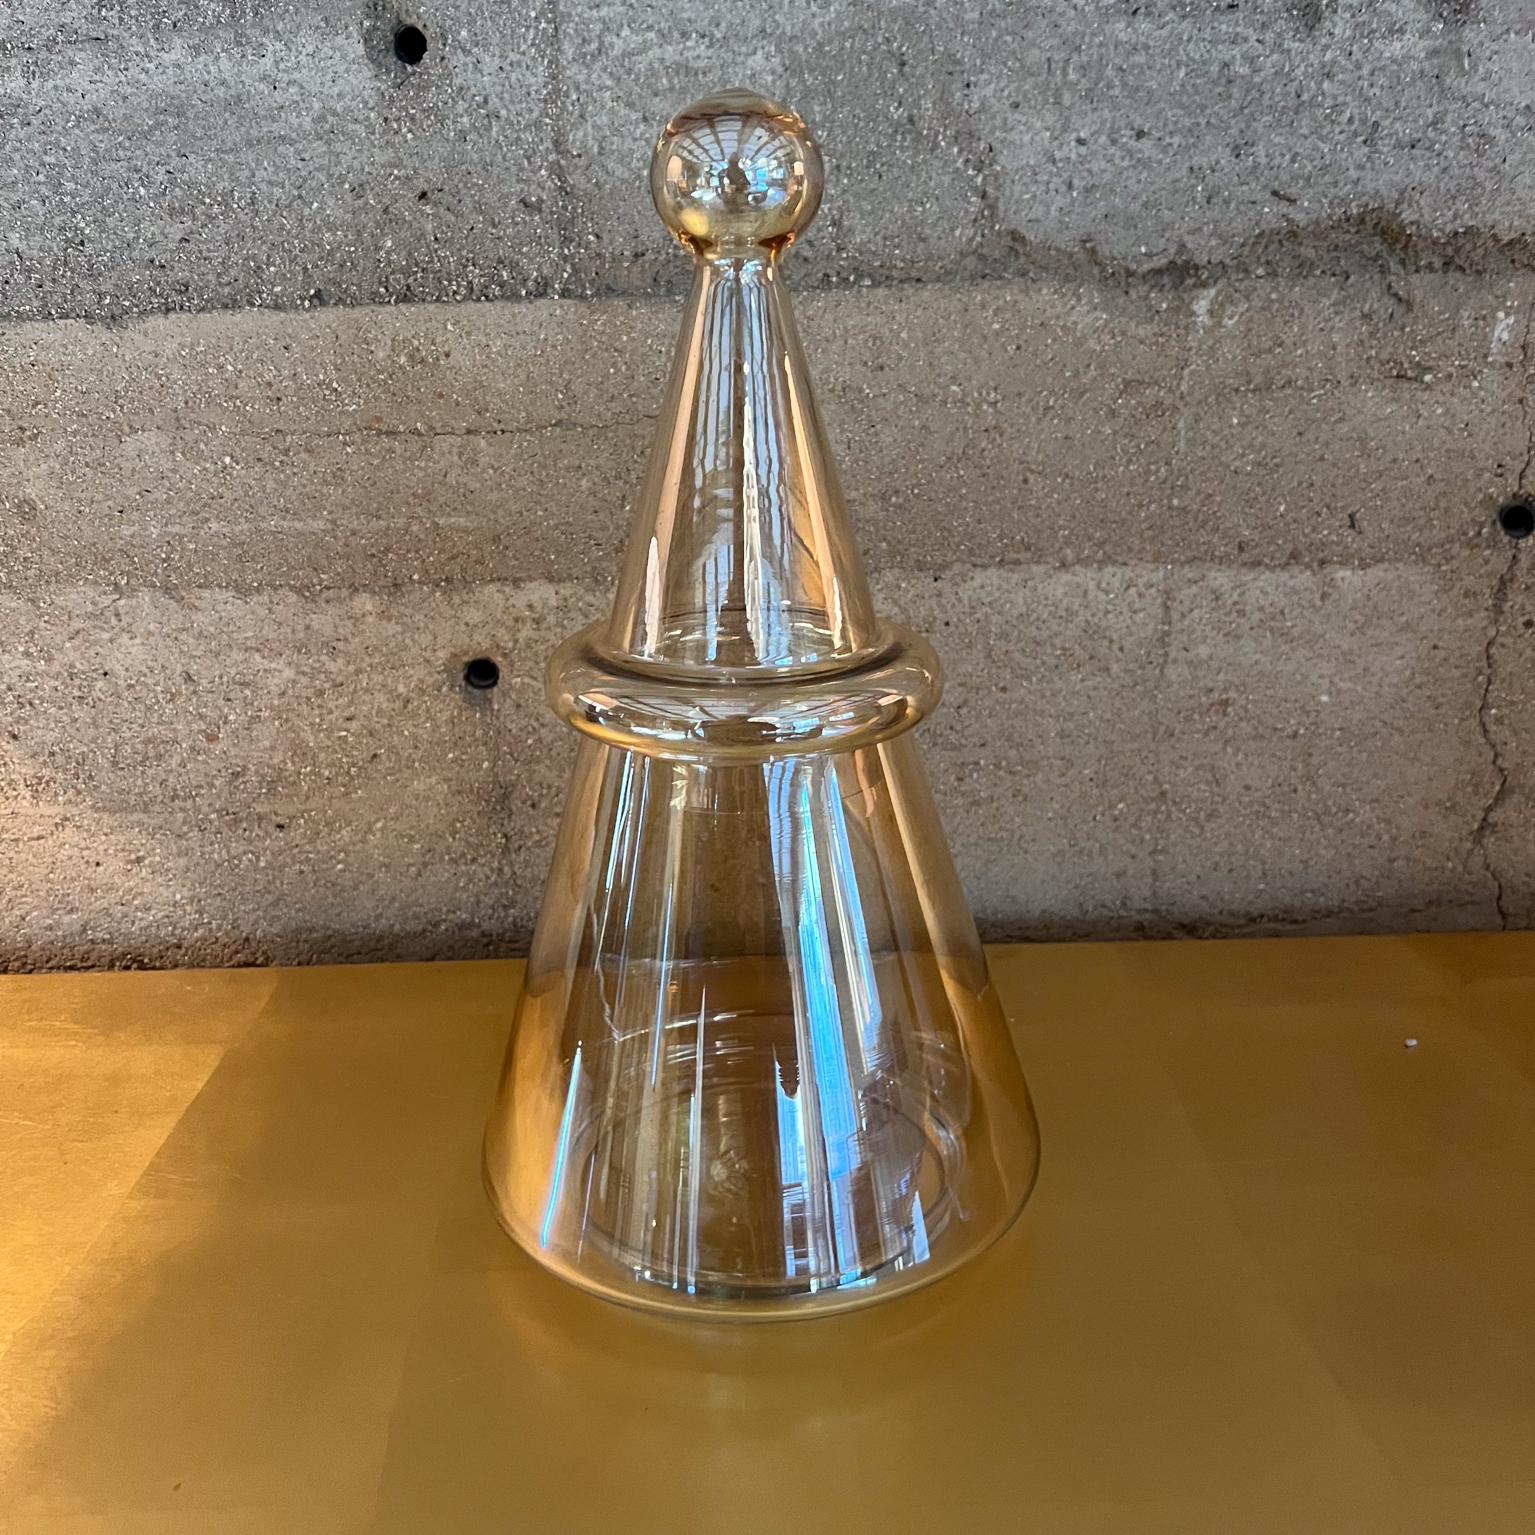 AMBIANIC présente
Bocal en verre en forme d'arbre Coupelle à bonbons
2 pièces en verre soufflé
14,5 h x 8 diamètre
Etat original d'occasion.
Voir toutes les images.